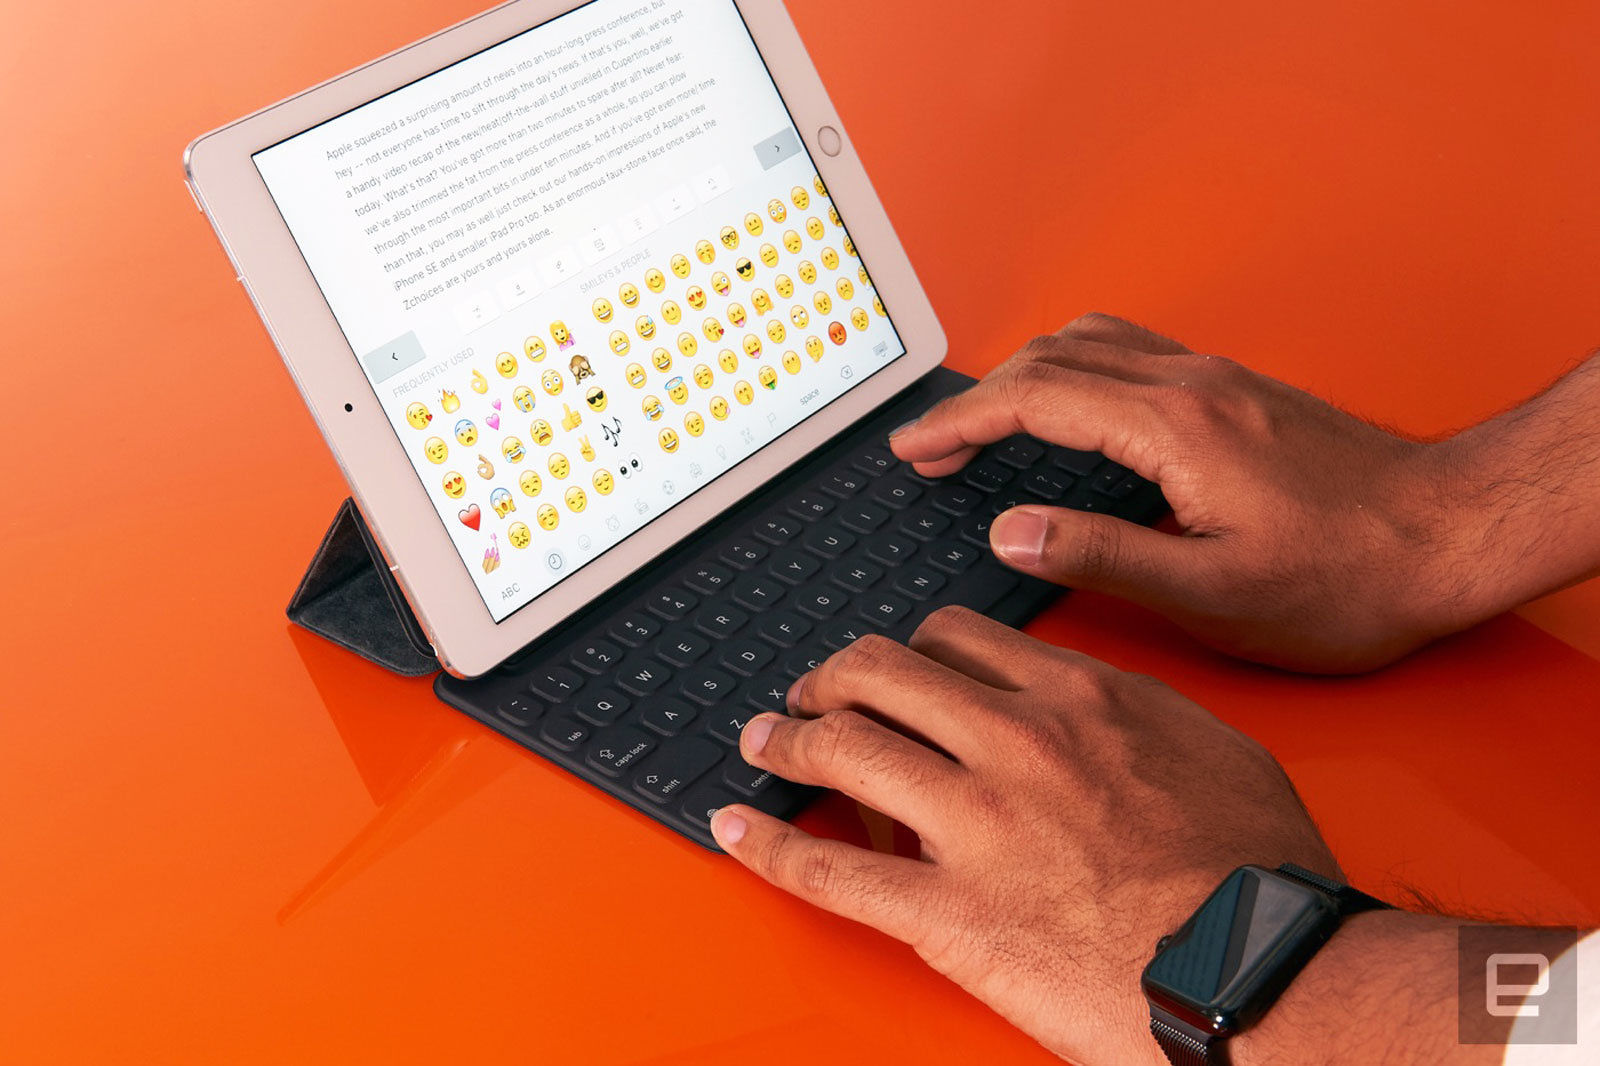 次期iPad用のSmart Keyboard、シザー構造やバックライトを採用のうわさ